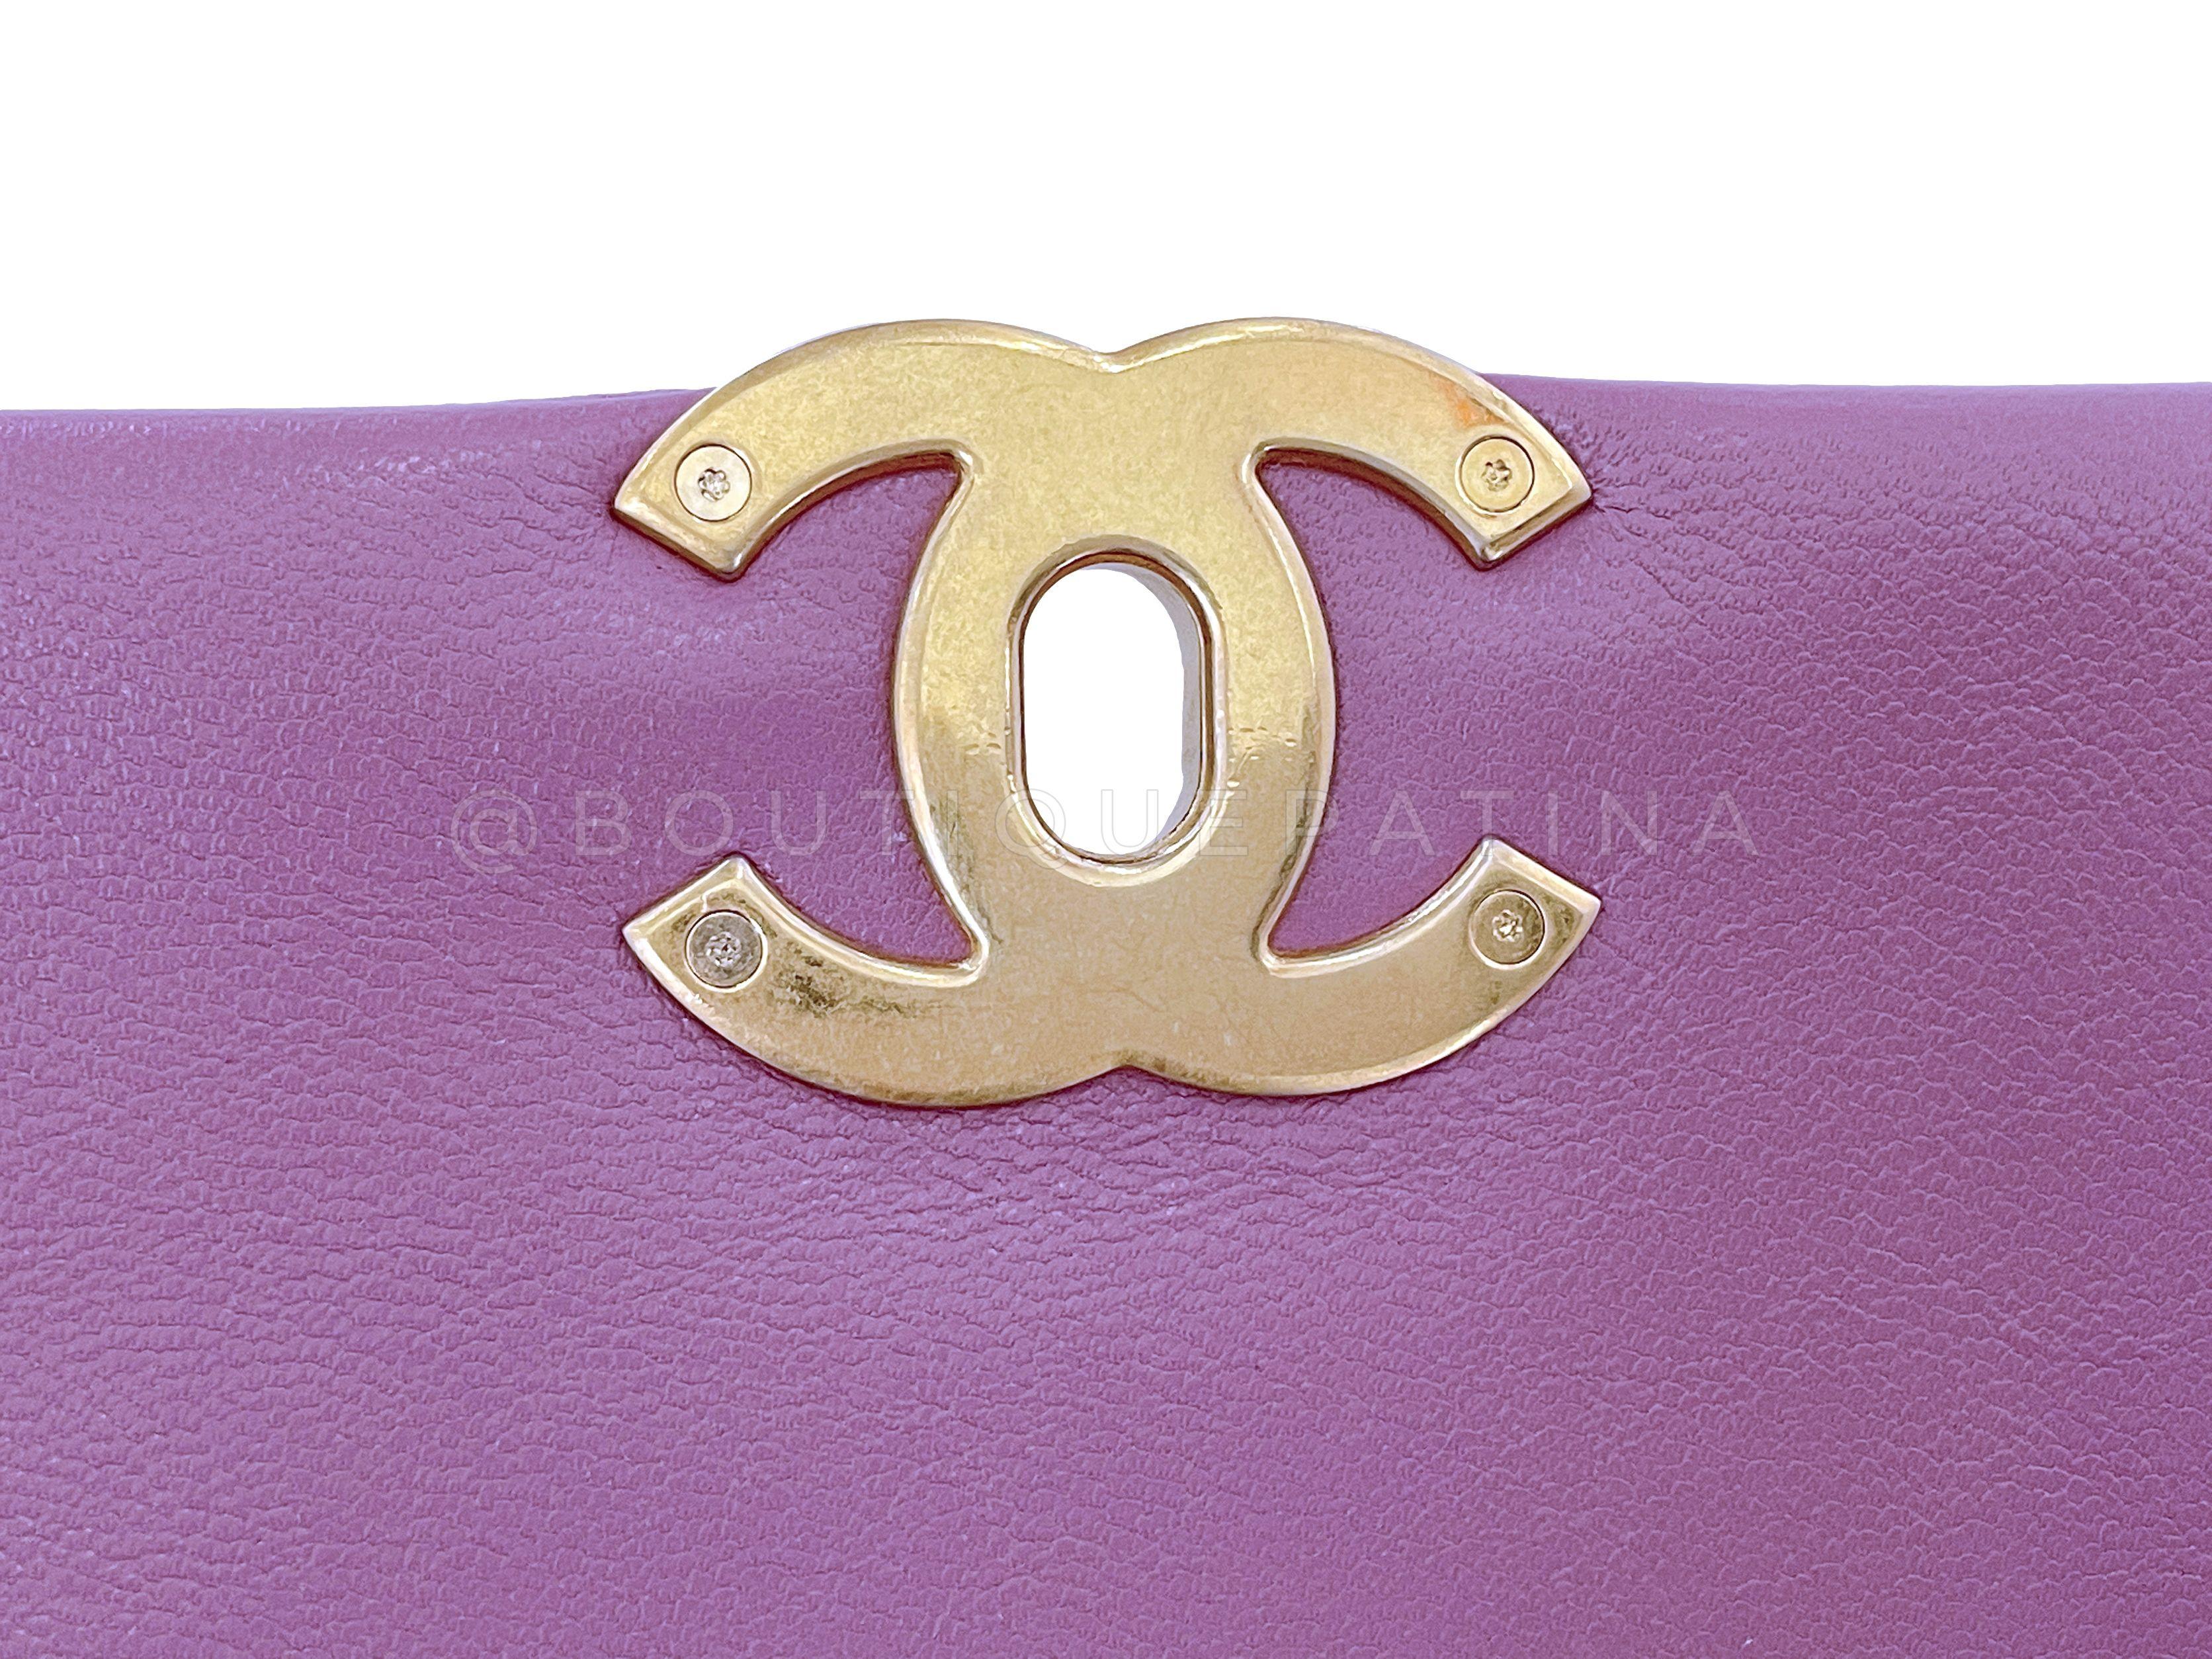 Chanel 19 20B Lavender Mauve Medium Flap Bag 65463 For Sale 2